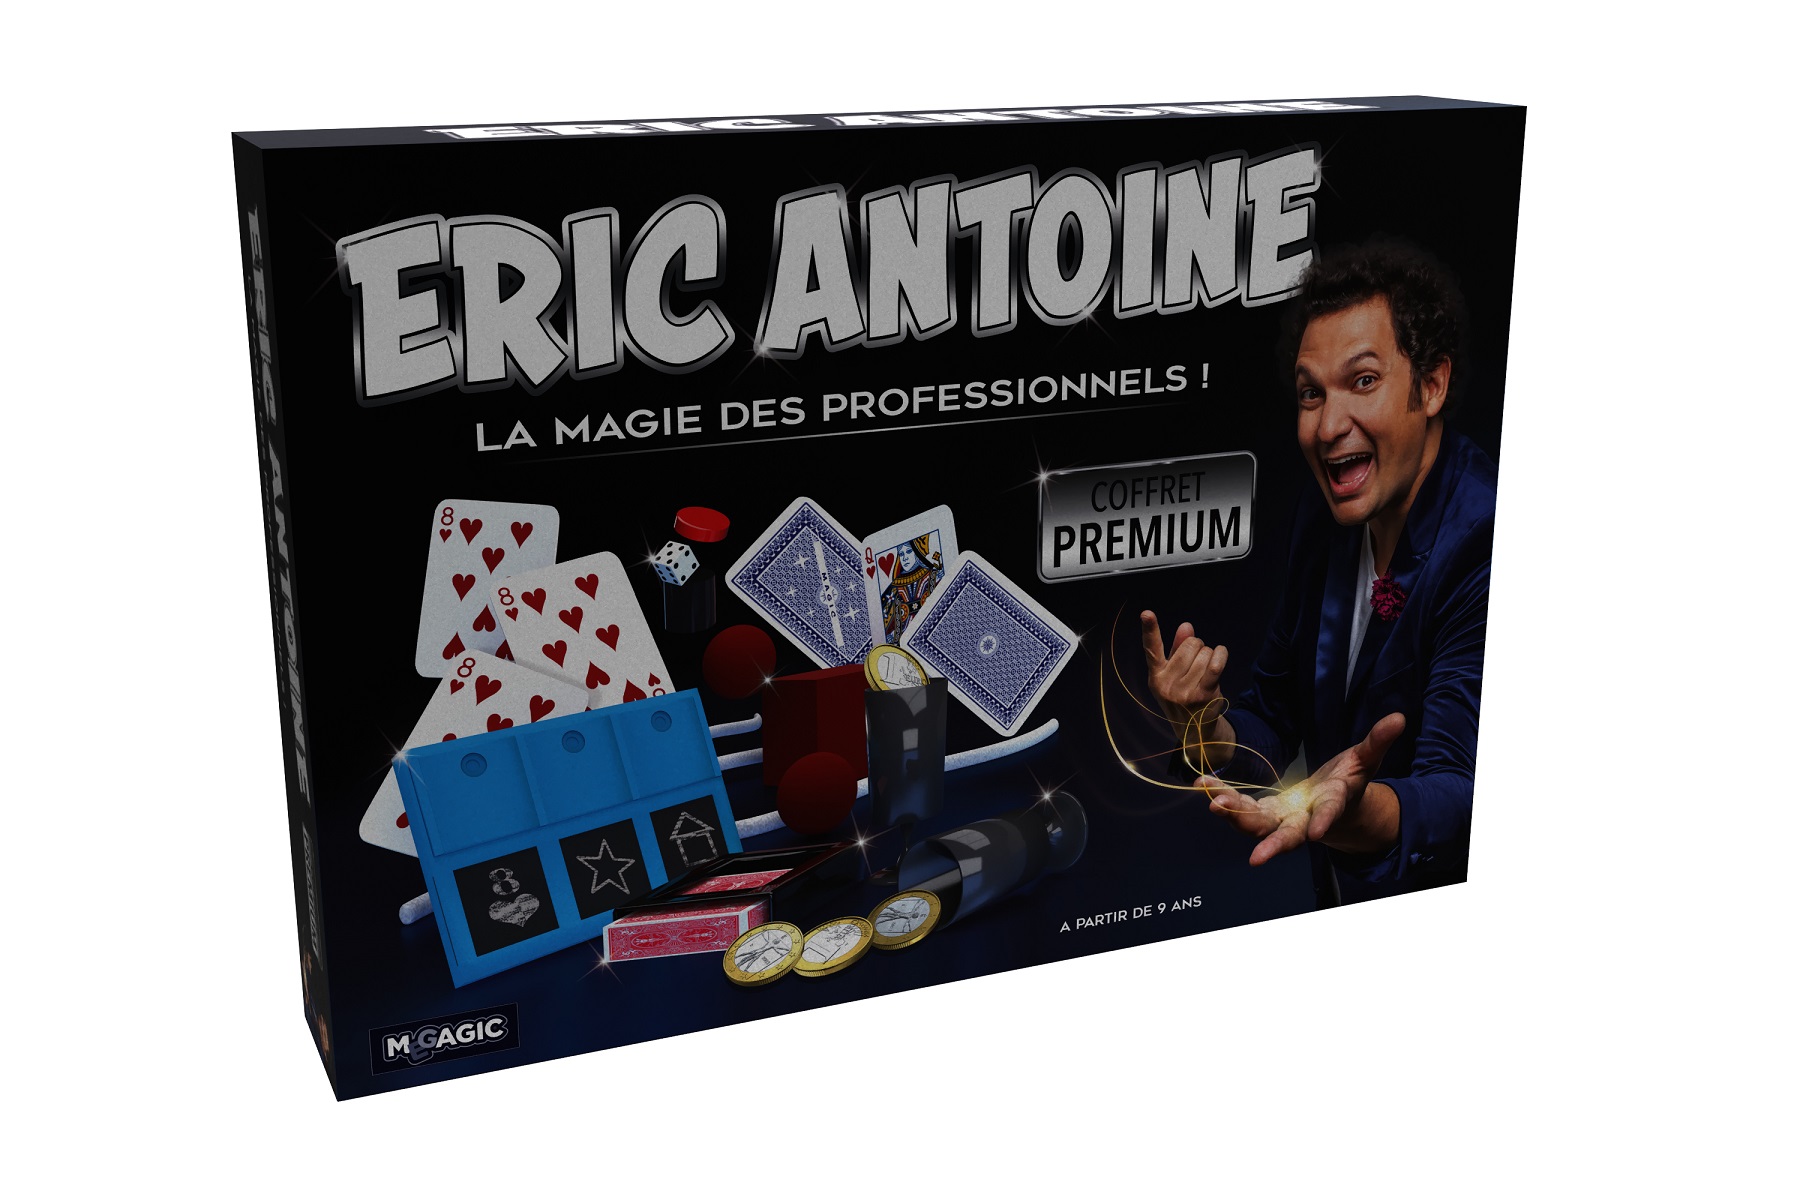 MEGAGIC Coffret premium la magie des professionnels - La magie  d'Eric-Antoine pas cher 